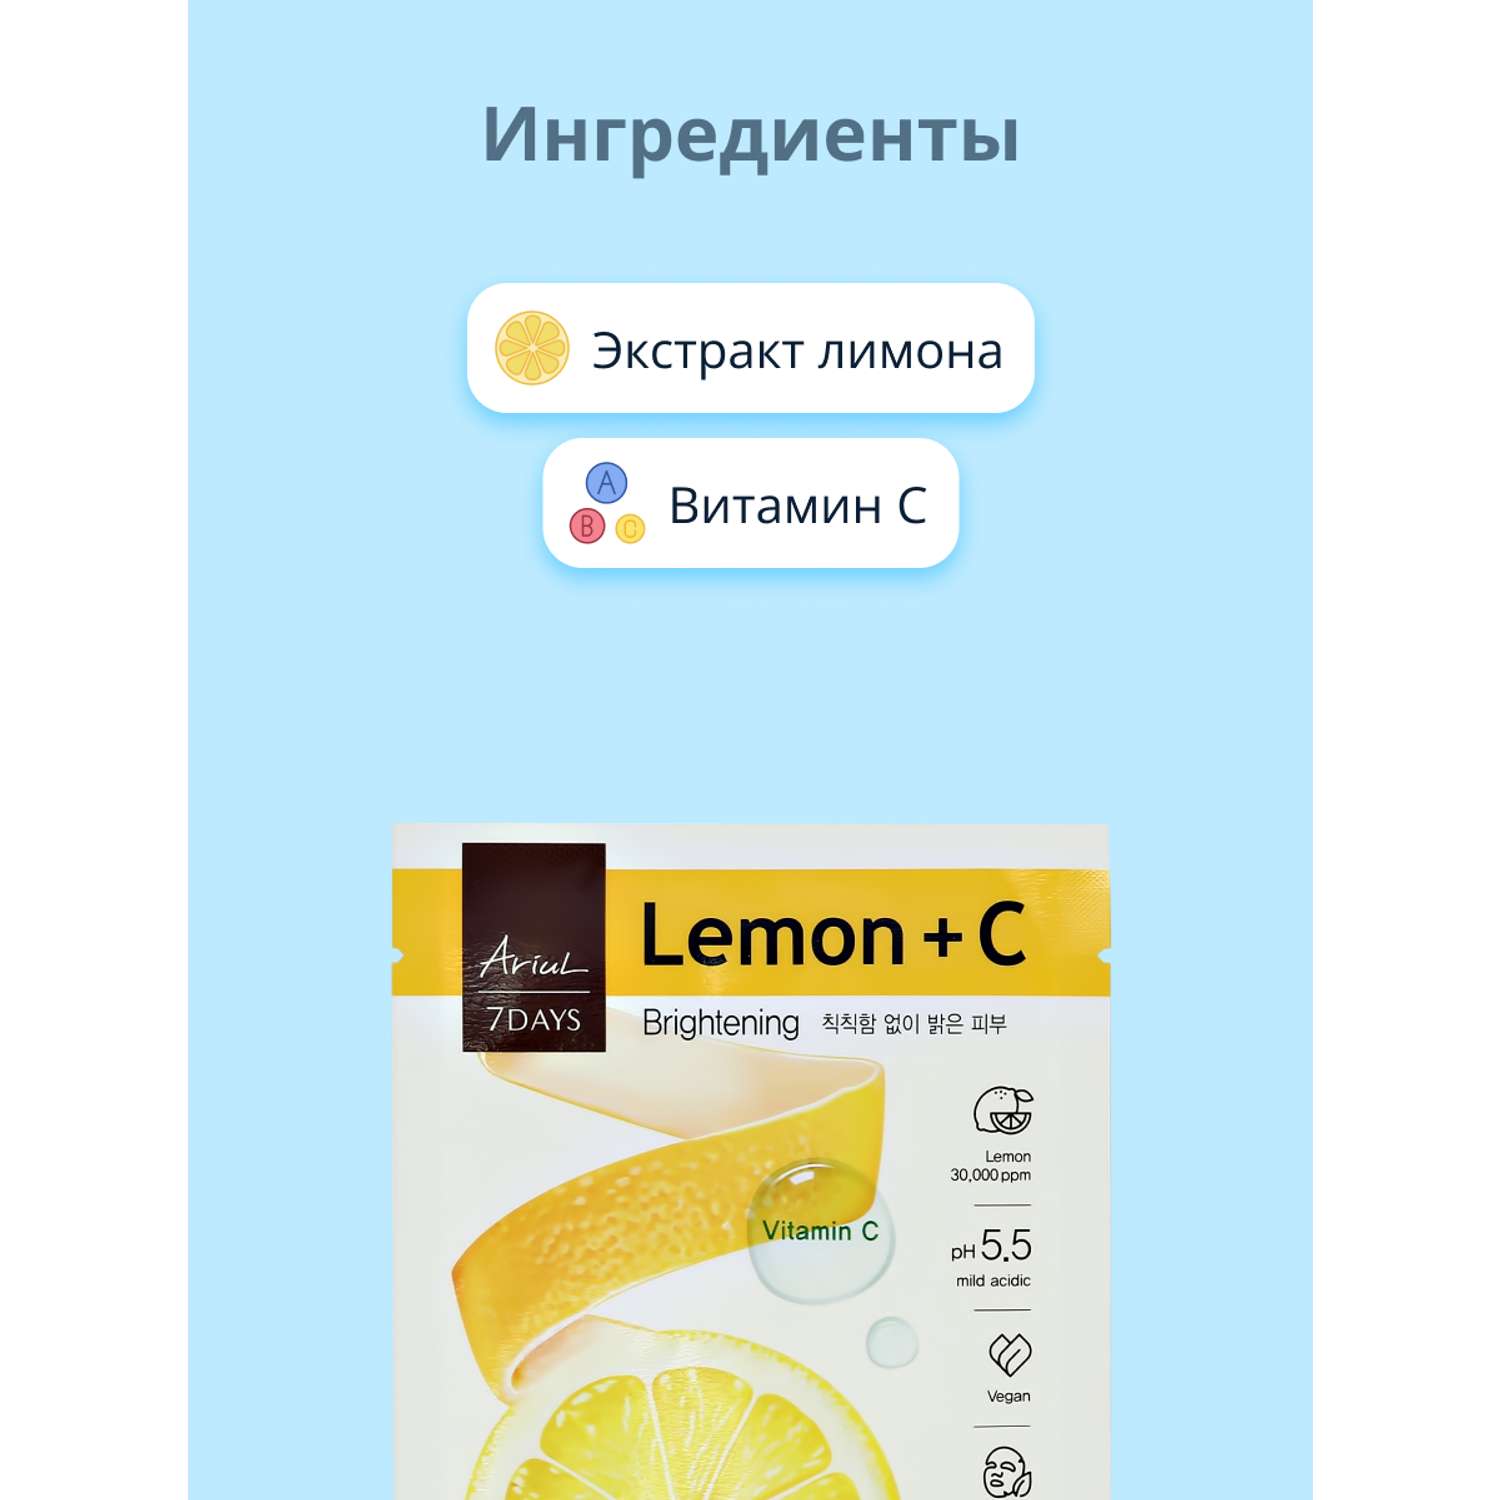 Маска тканевая Ariul 7 days с экстрактом лимона и витамином С 23мл - фото 2